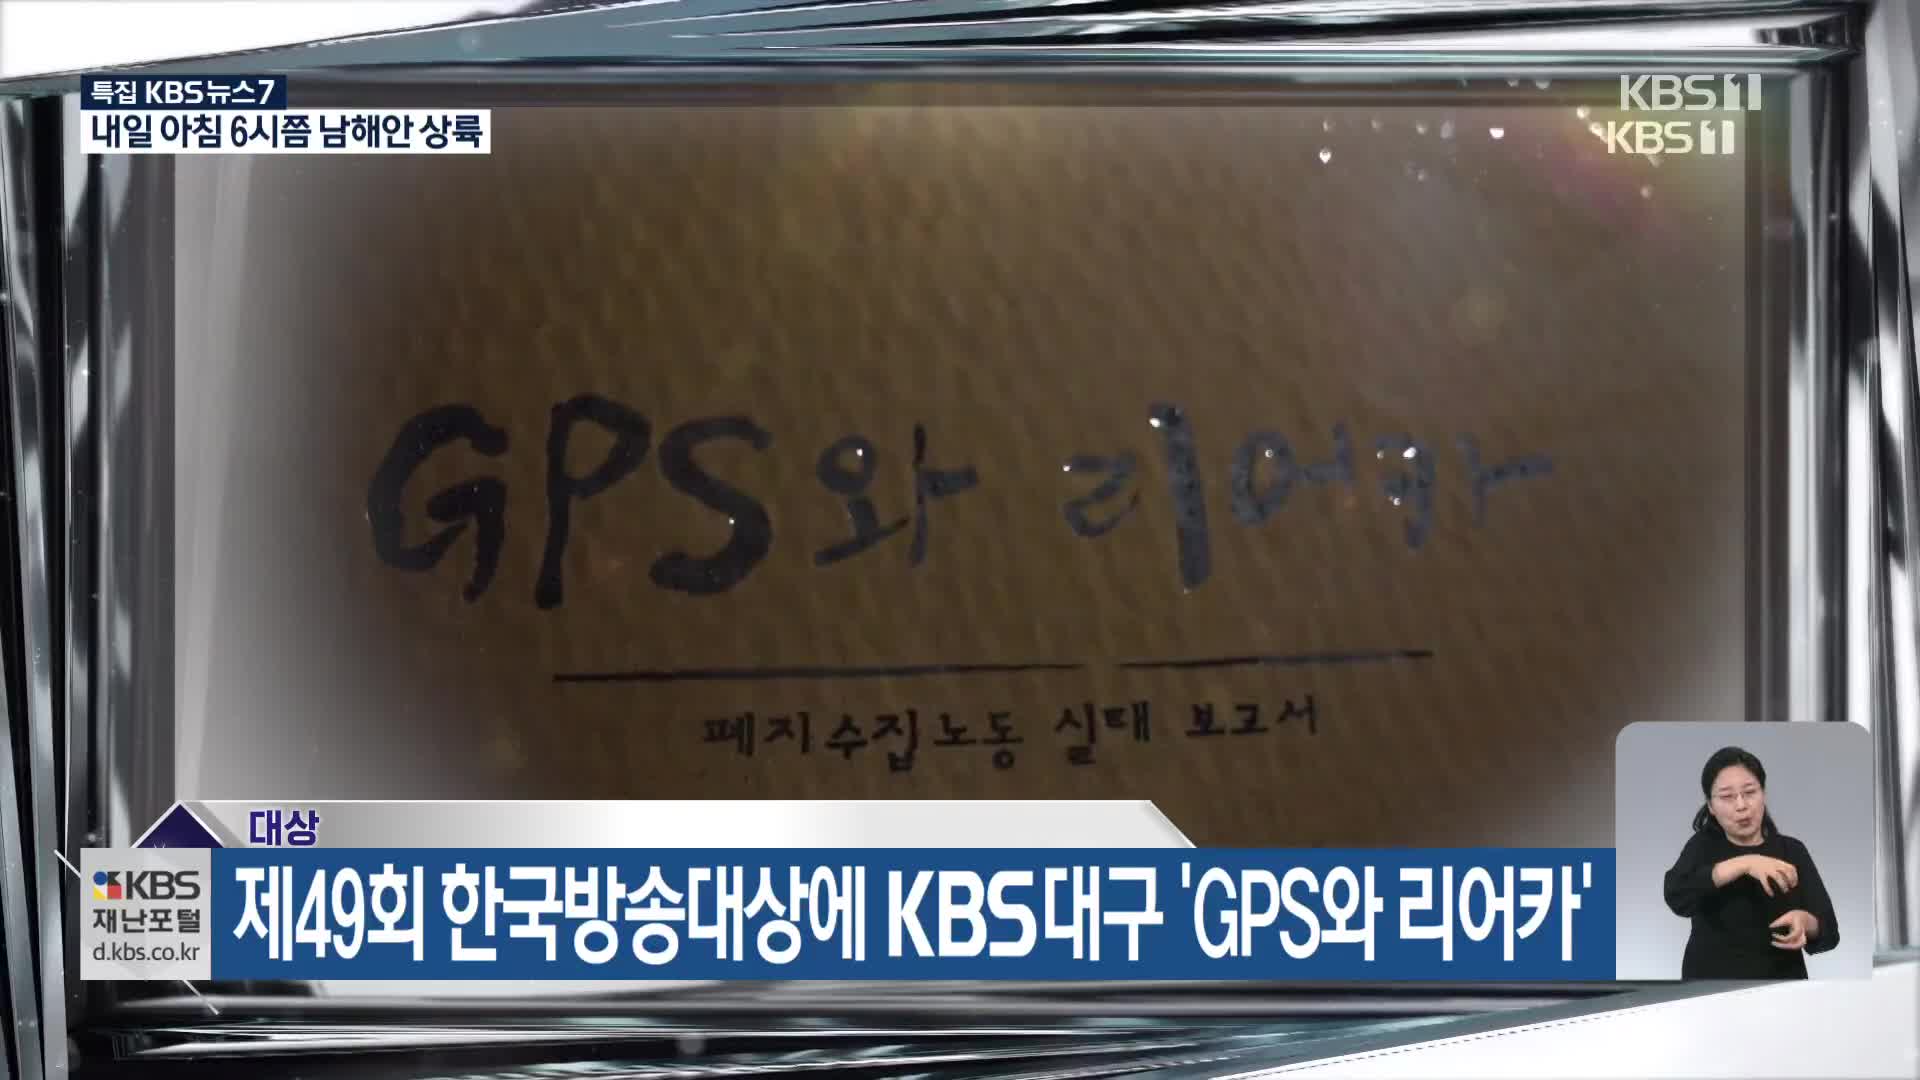 제49회 한국방송대상에 KBS대구 ‘GPS와 리어카’